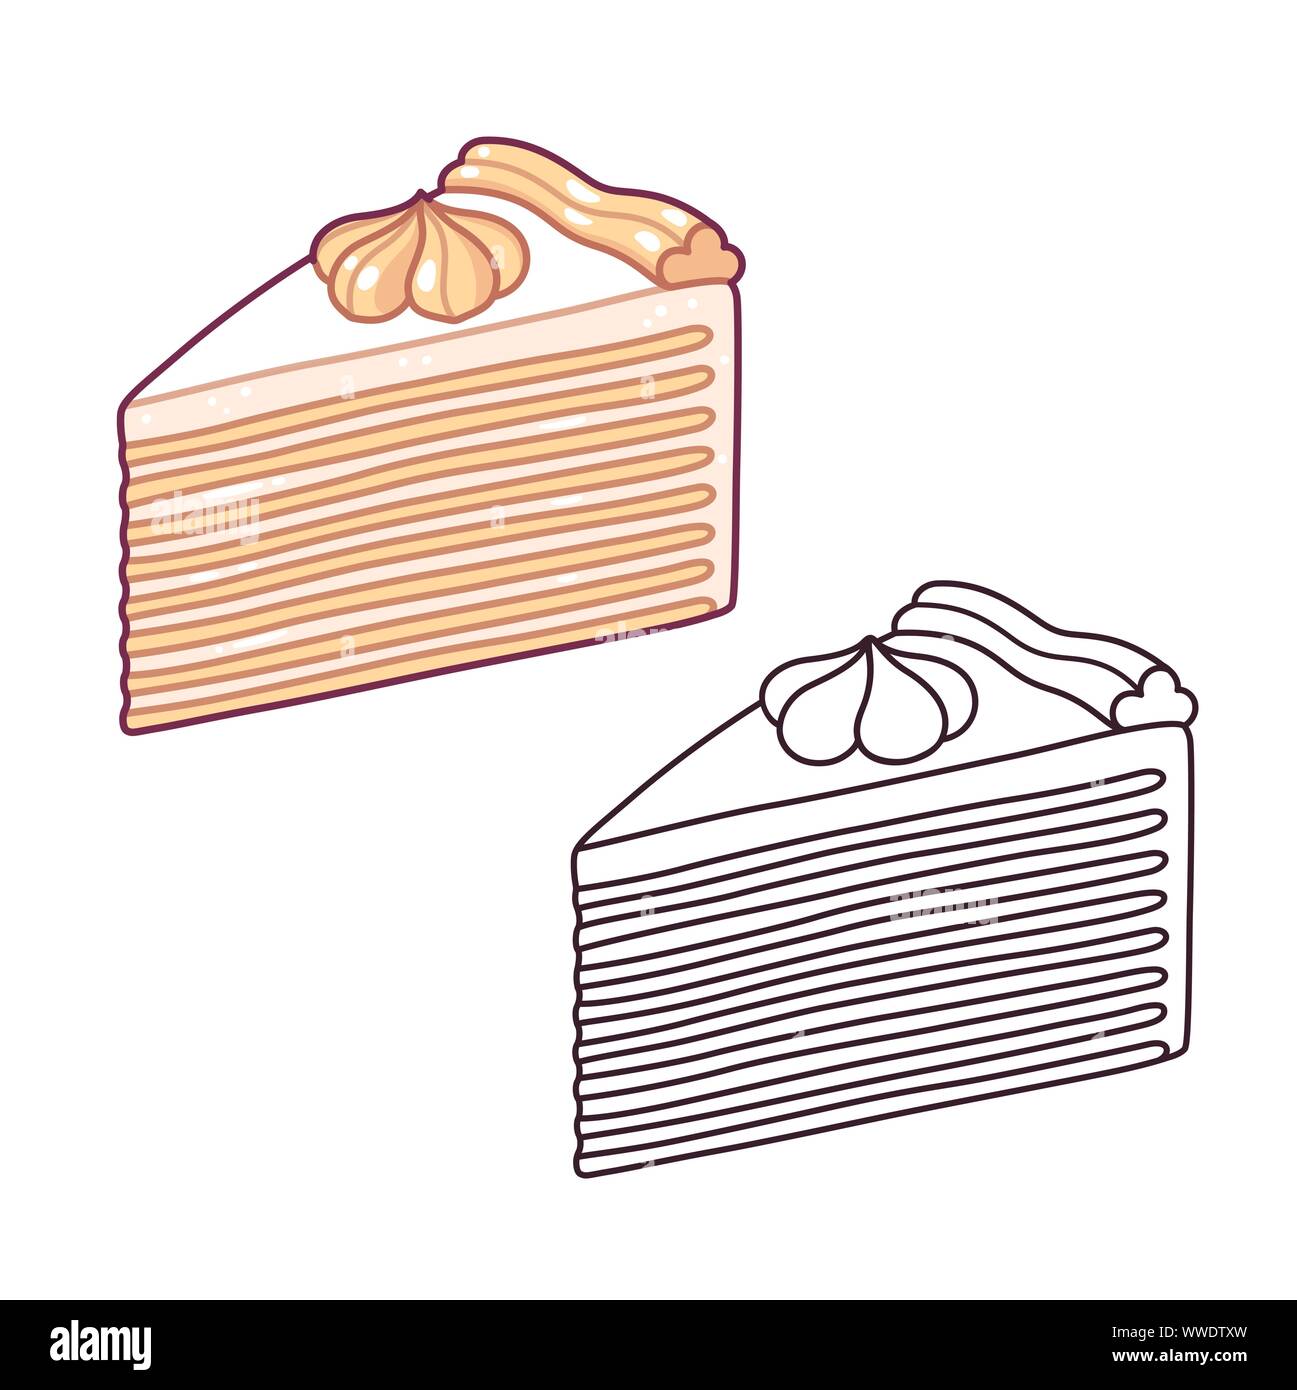 Napoleon Kuchen, traditionellen Mille-feuille Gebäck mit vielen dünnen Schichten und Sahne frosting. Hand Cartoon Stil Vector Illustration gezeichnet. Farbe der Zeichnung Stock Vektor